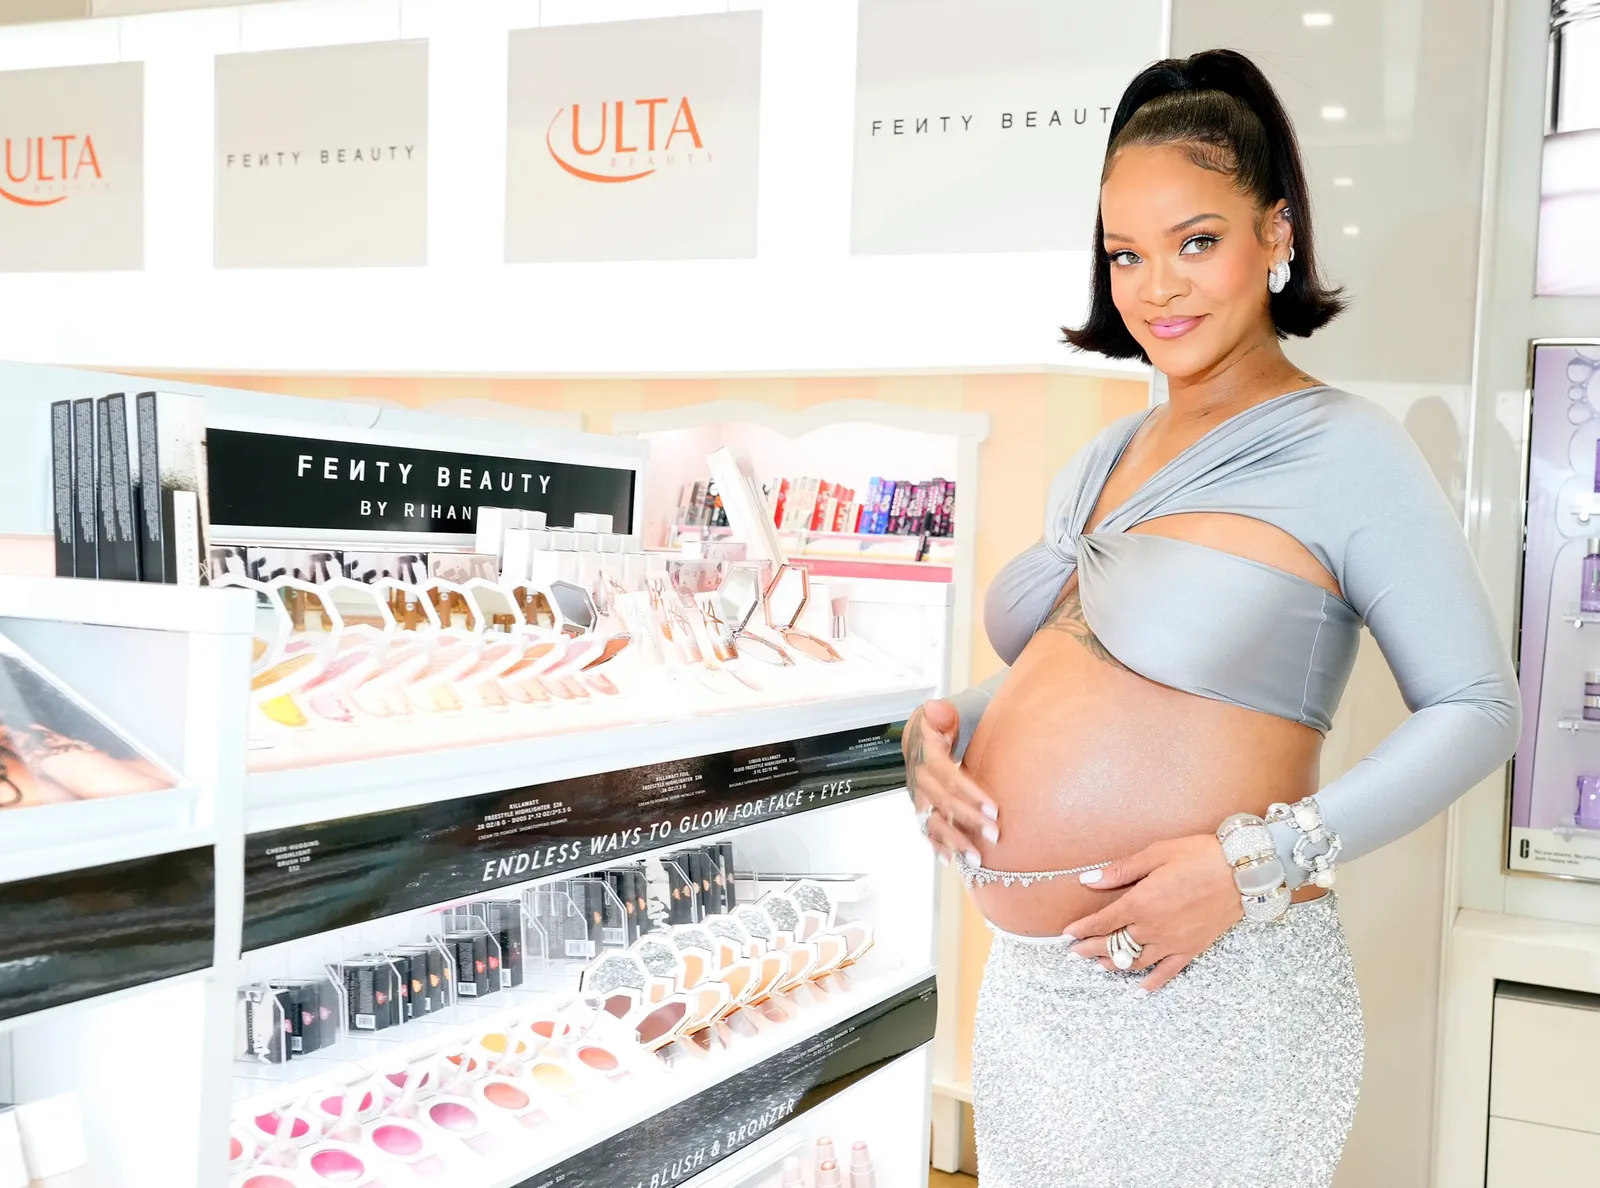 Gaya Seksi Rihanna Ekspos Kehamilan di Acara Fenty Beauty